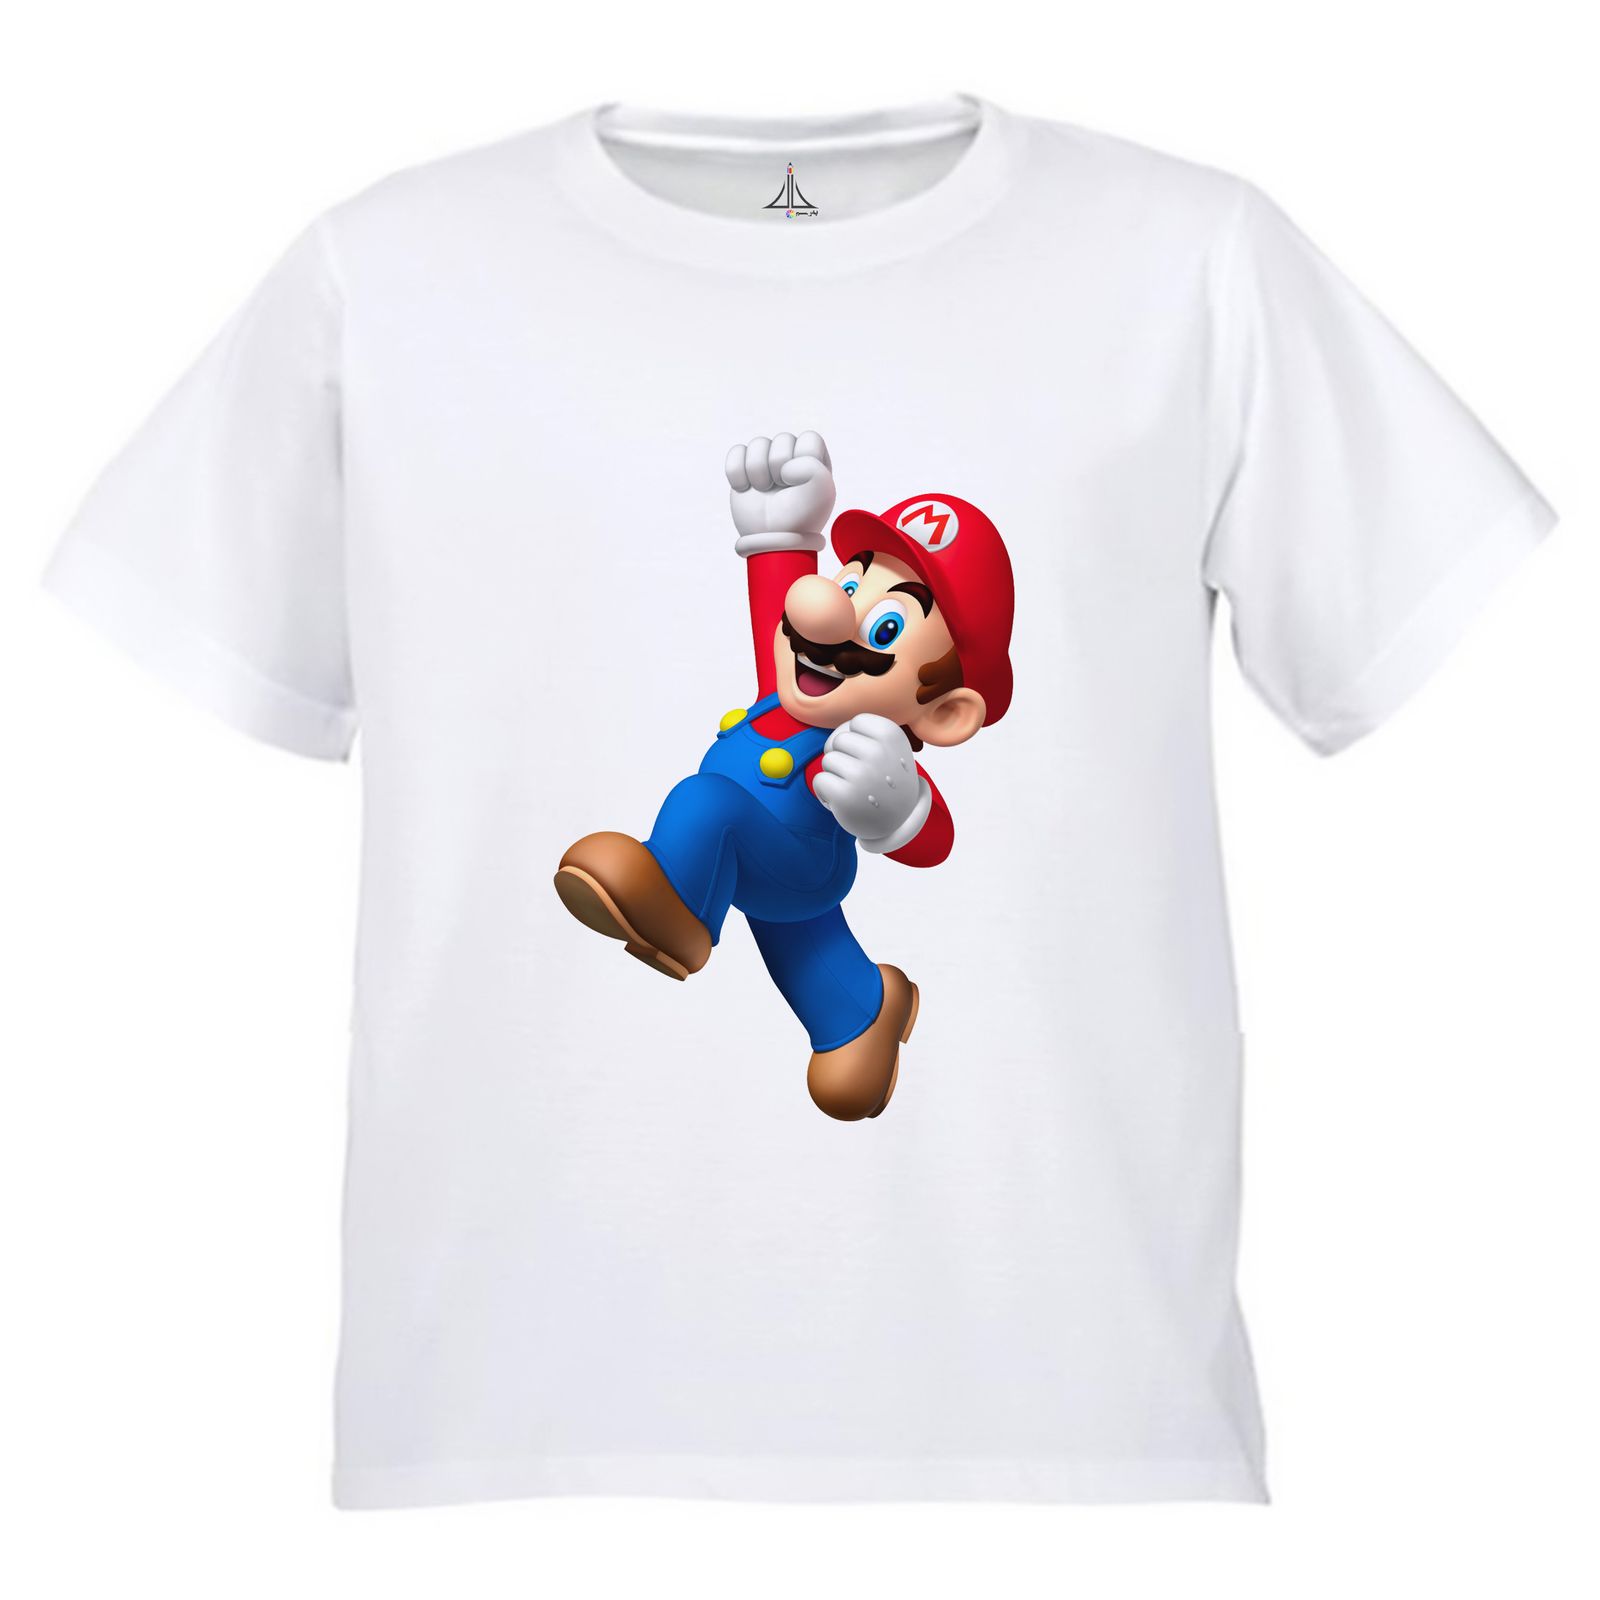 تی شرت آستین کوتاه بچگانه به رسم مدل سوپر ماریو کد 9943 -  - 1